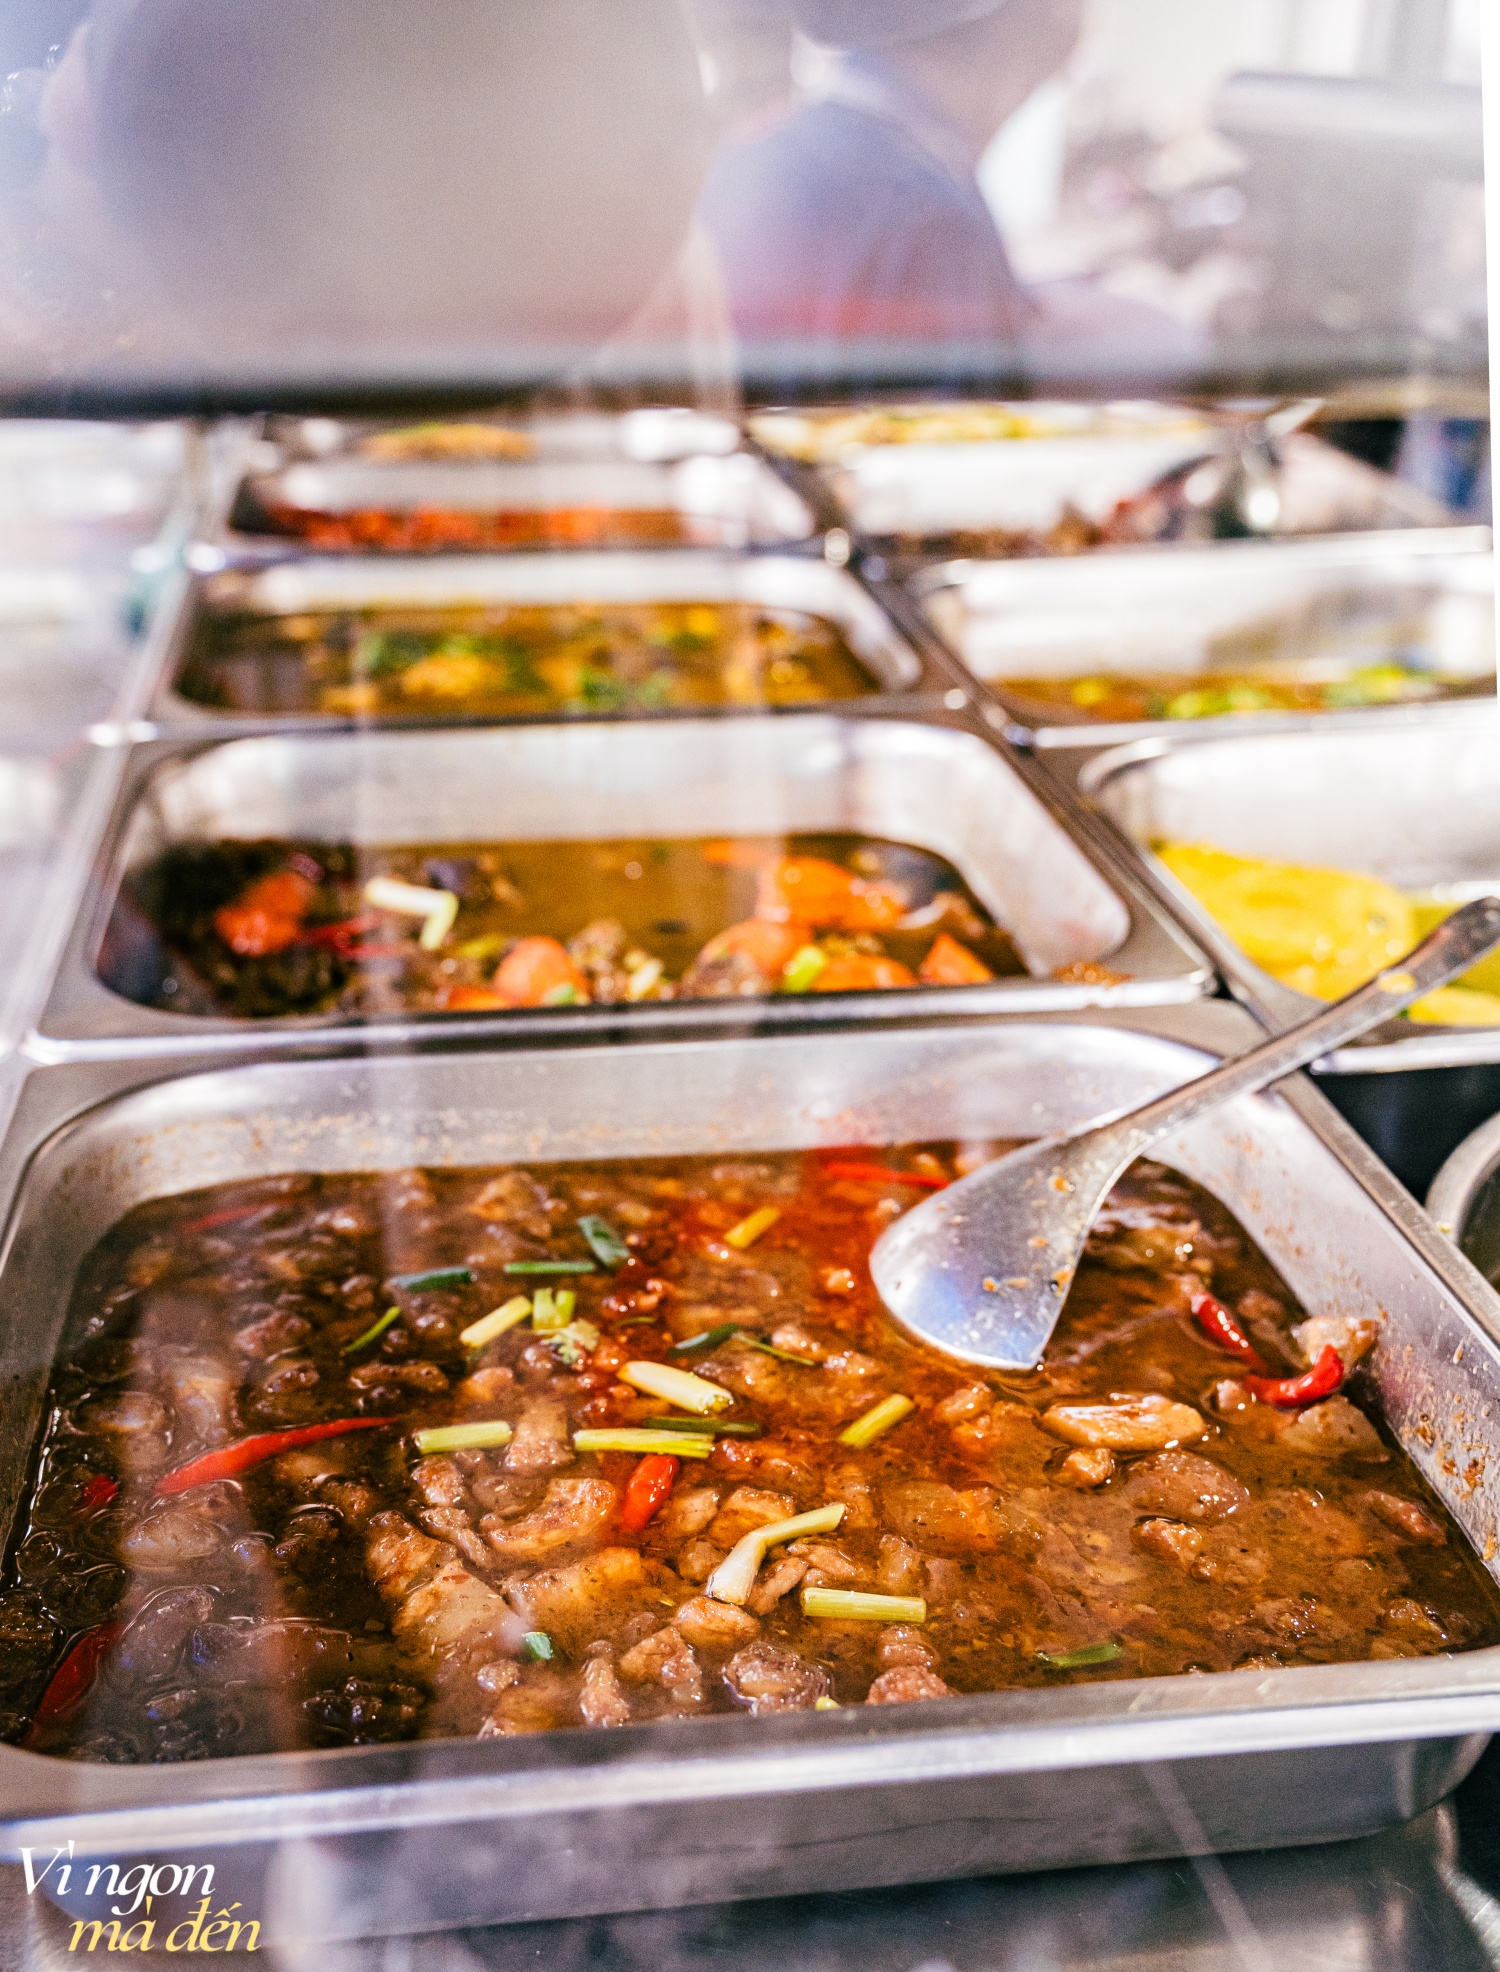 Đi ăn cơm bình dân kiểu người Hoa: Cửa tiệm bán 3 đời mỗi ngày nấu hơn 30 món cầu kỳ, đông khách đến nỗi không dám mở trên ứng dụng giao đồ ăn- Ảnh 5.